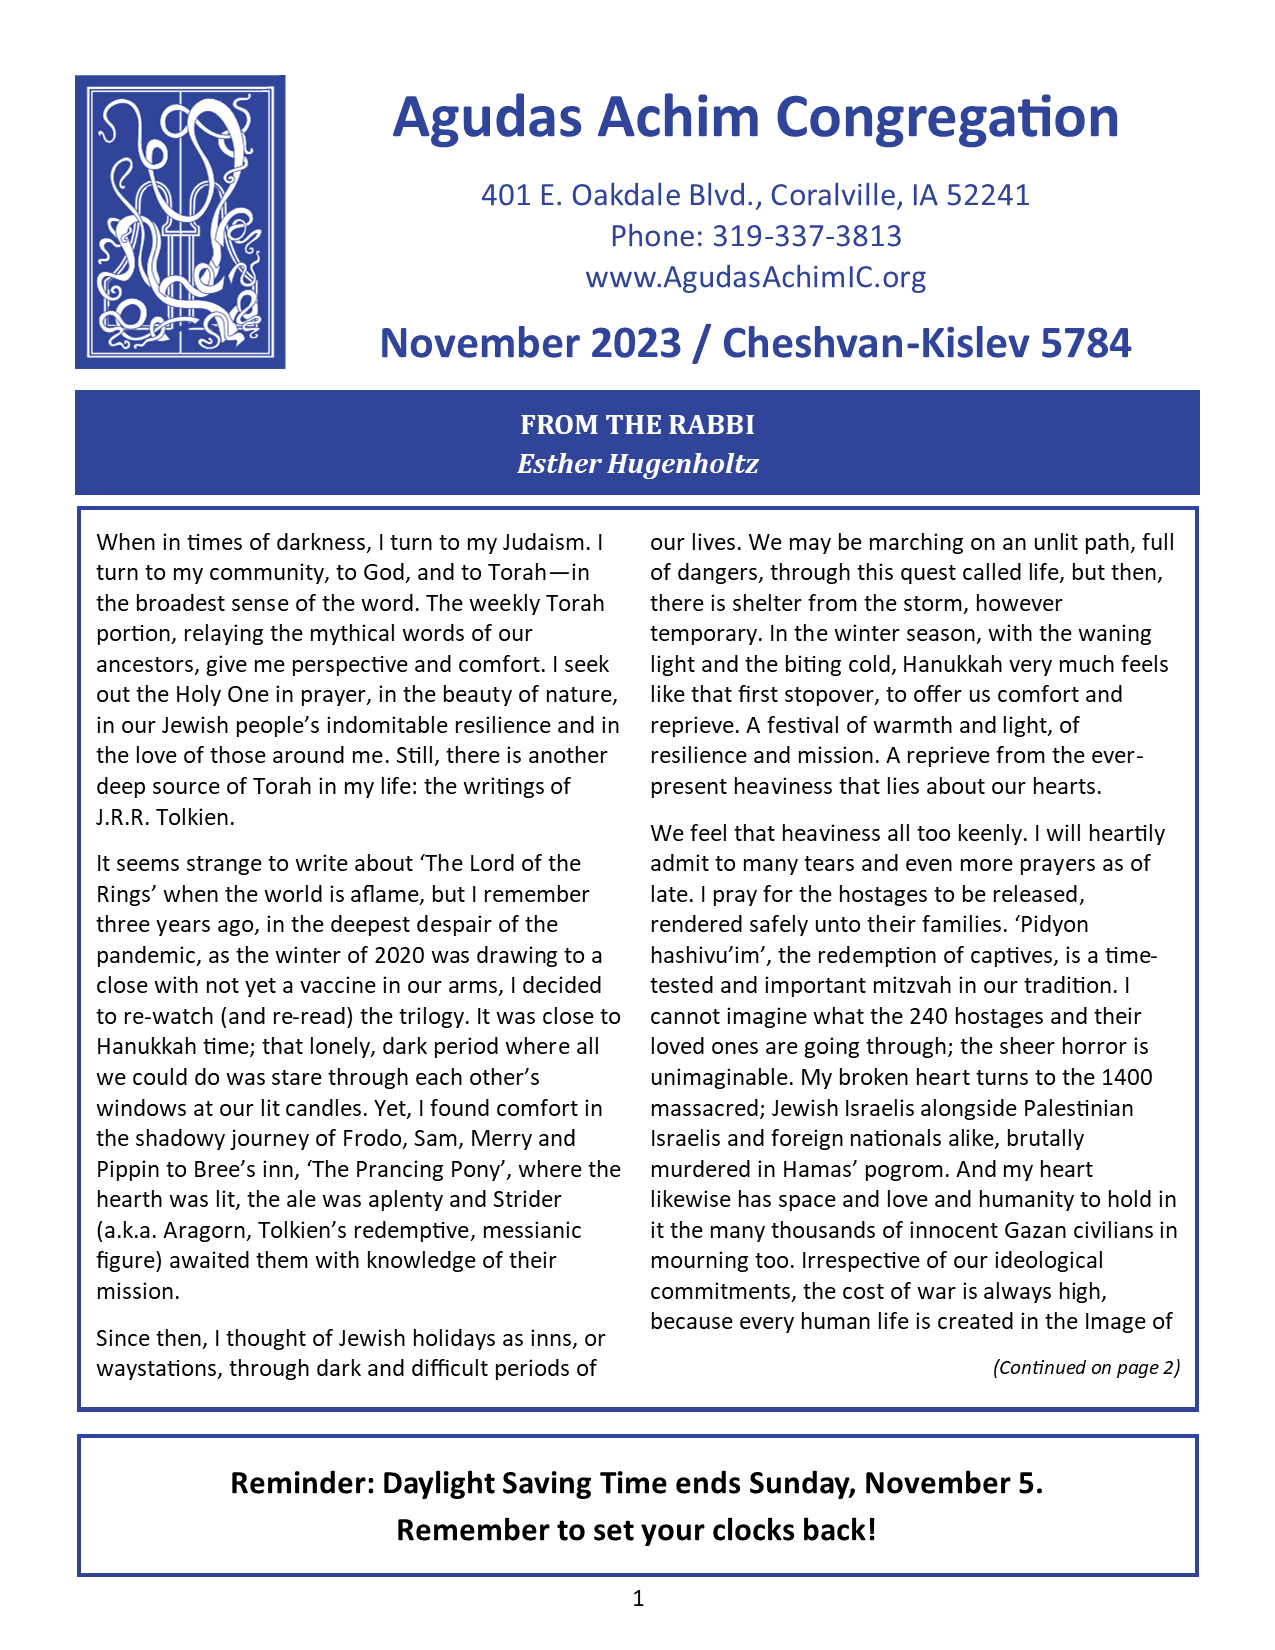 November 2023 Bulletin Cover